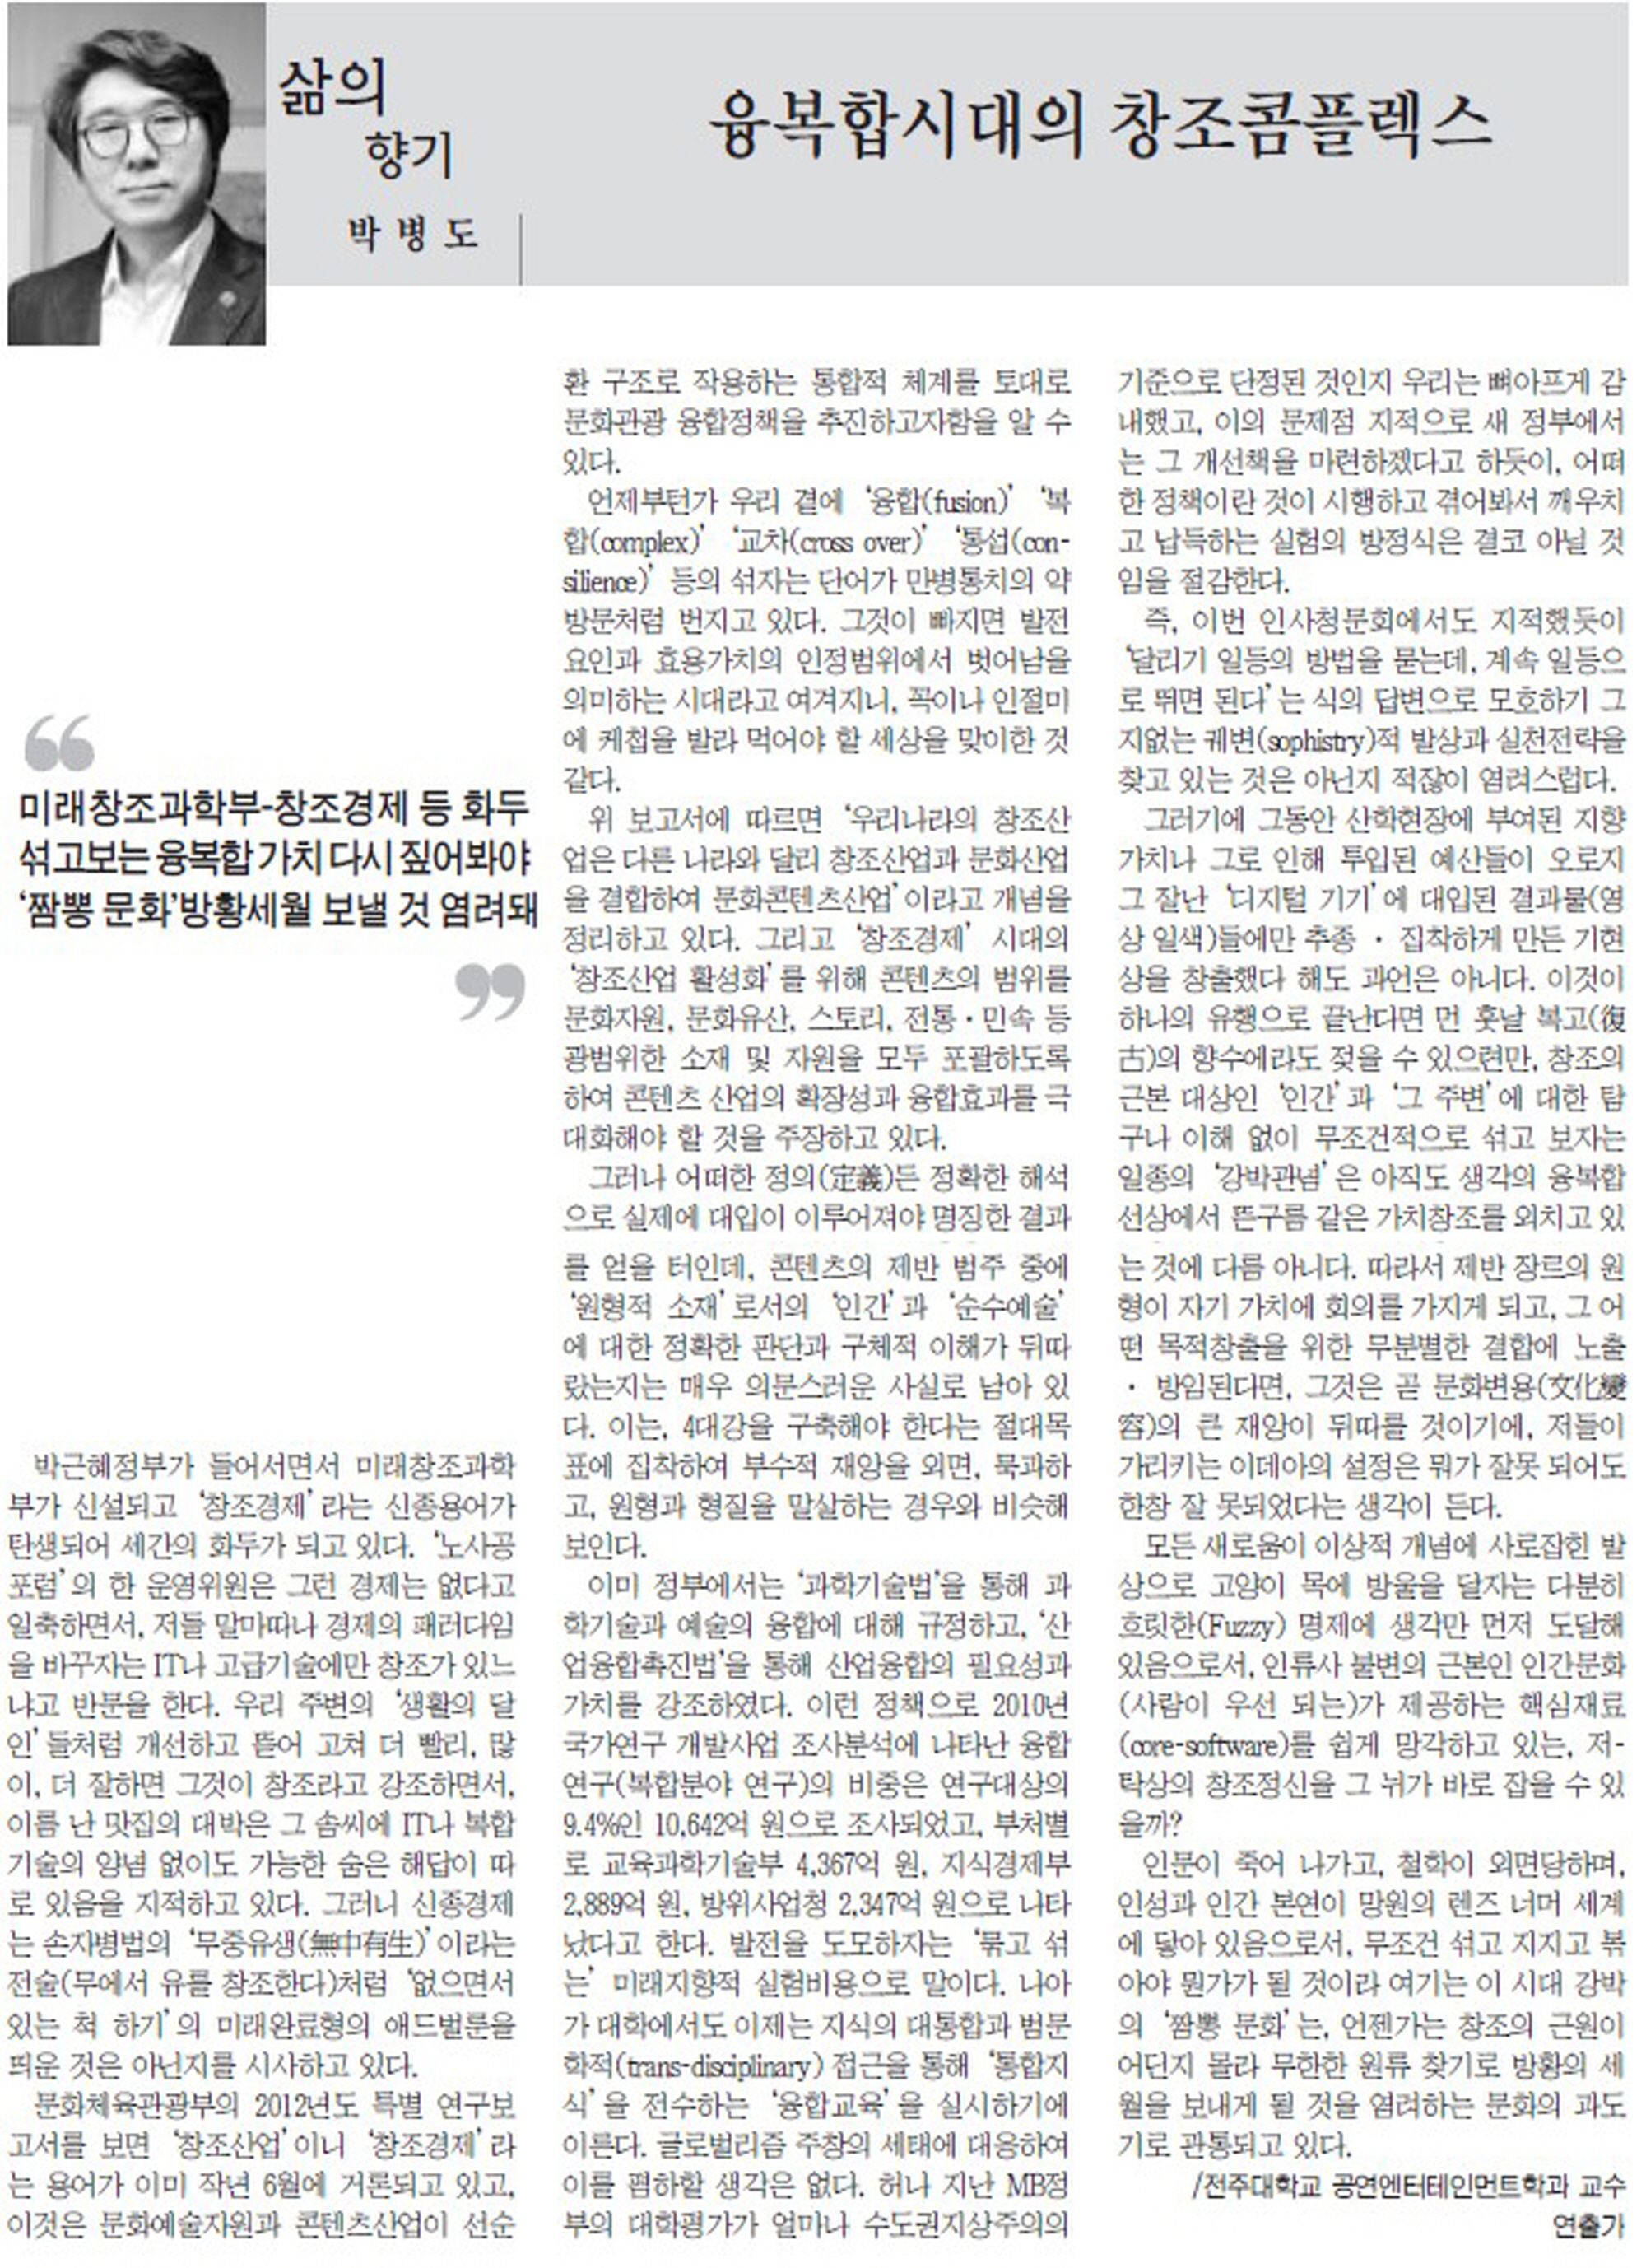 융복합시대의 창조컴플렉스=새전북신문 칼럼-8-20130405.jpg